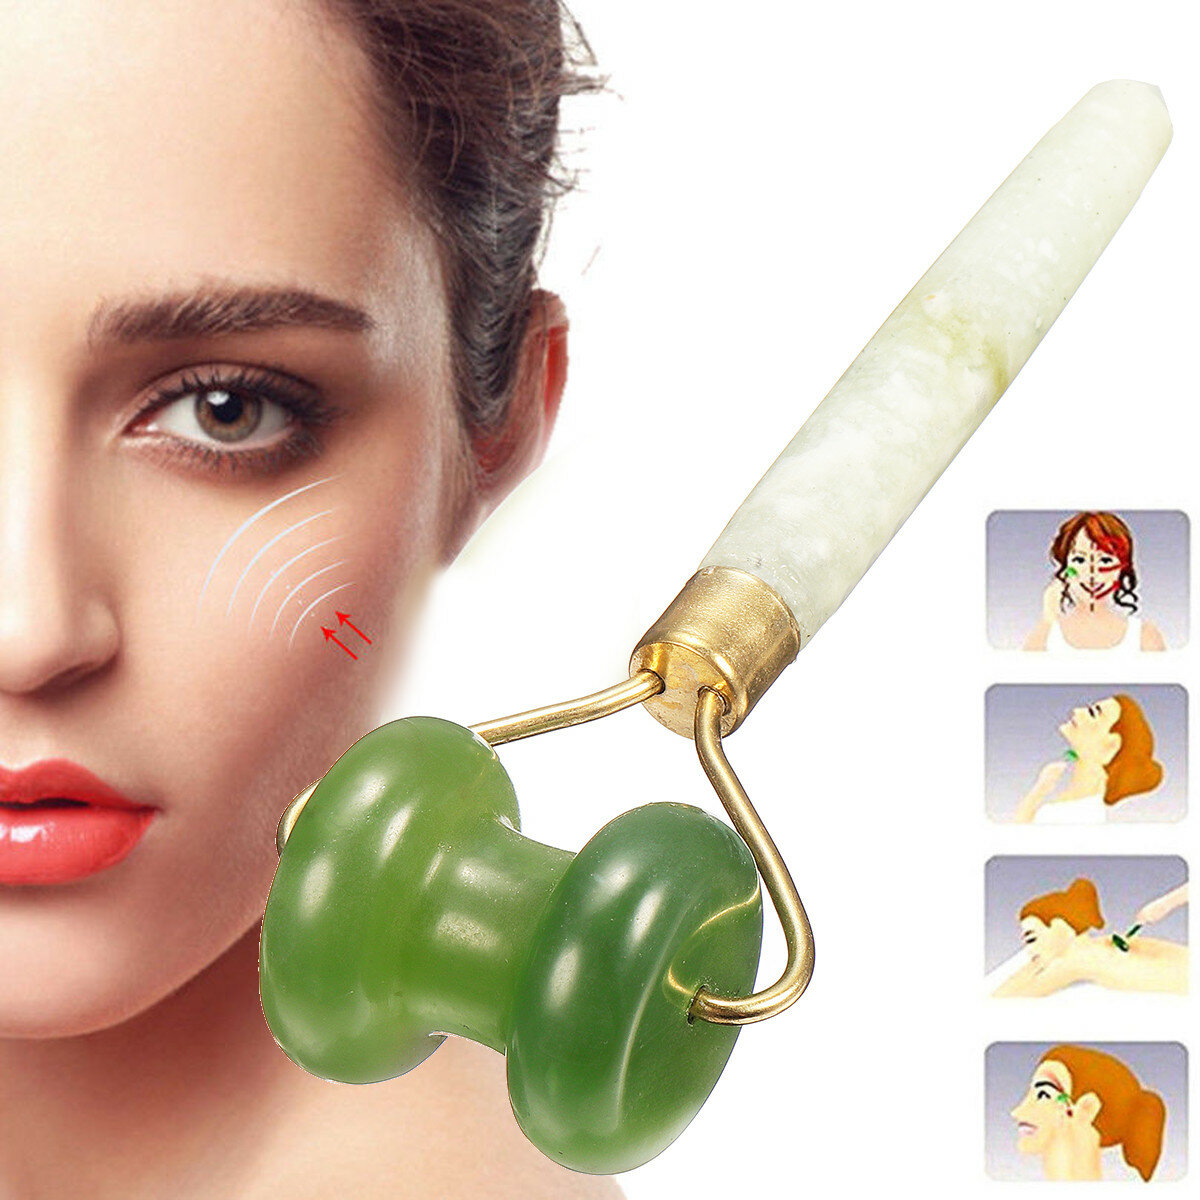 Jadegrün Roller Massagegerät Gesund Gesicht Beauty Körper Kopf Hals Fuß Grün 